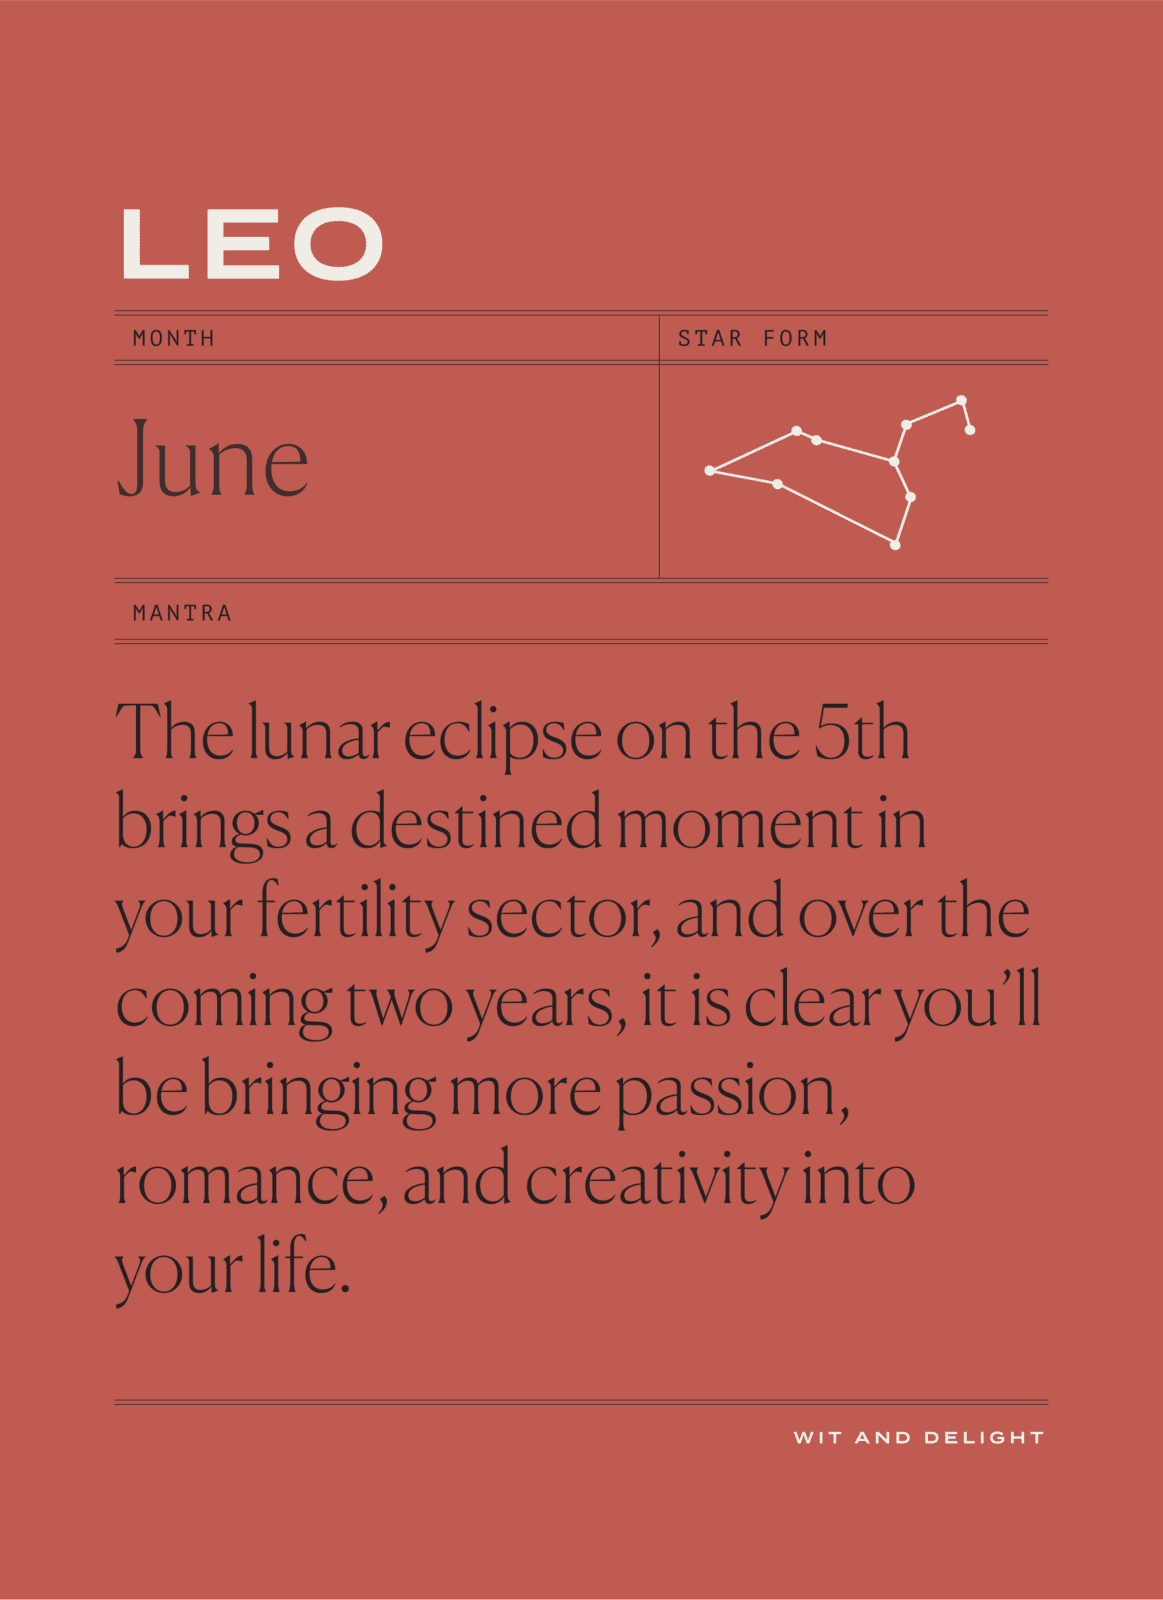 Leo June 2020 Horoscopes | Wit & Delight